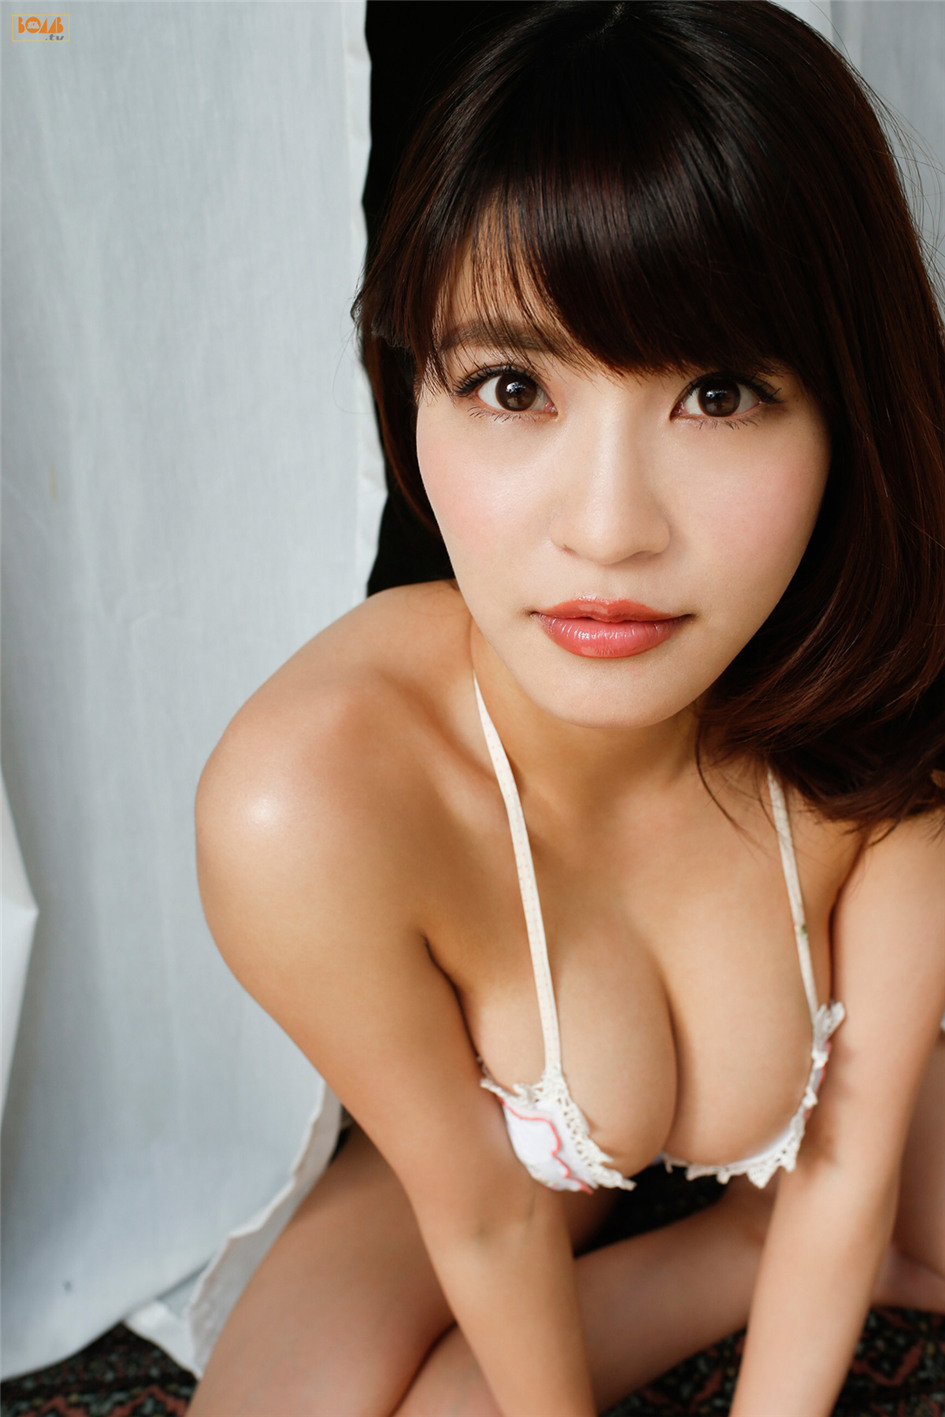 日本女星岸明日香豪乳写真套图 性感妖姬 Mm范 美女写真高清图片免费在线看